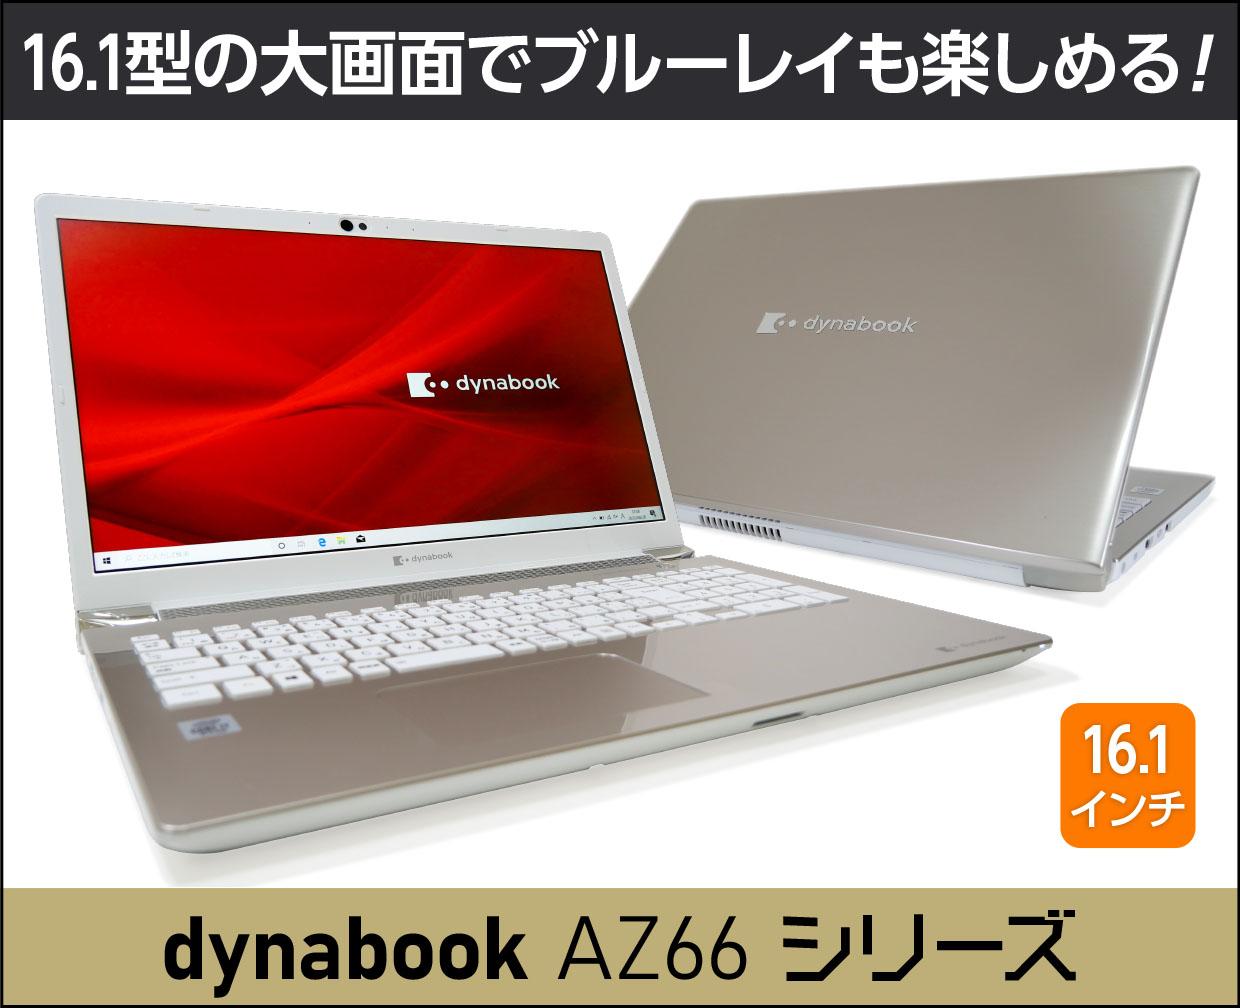 Dynabook Az66シリーズ の実機レビュー 大画面でブルーレイディスクも楽しめる エンタメ重視で選びたい方に これがおすすめノートパソコン